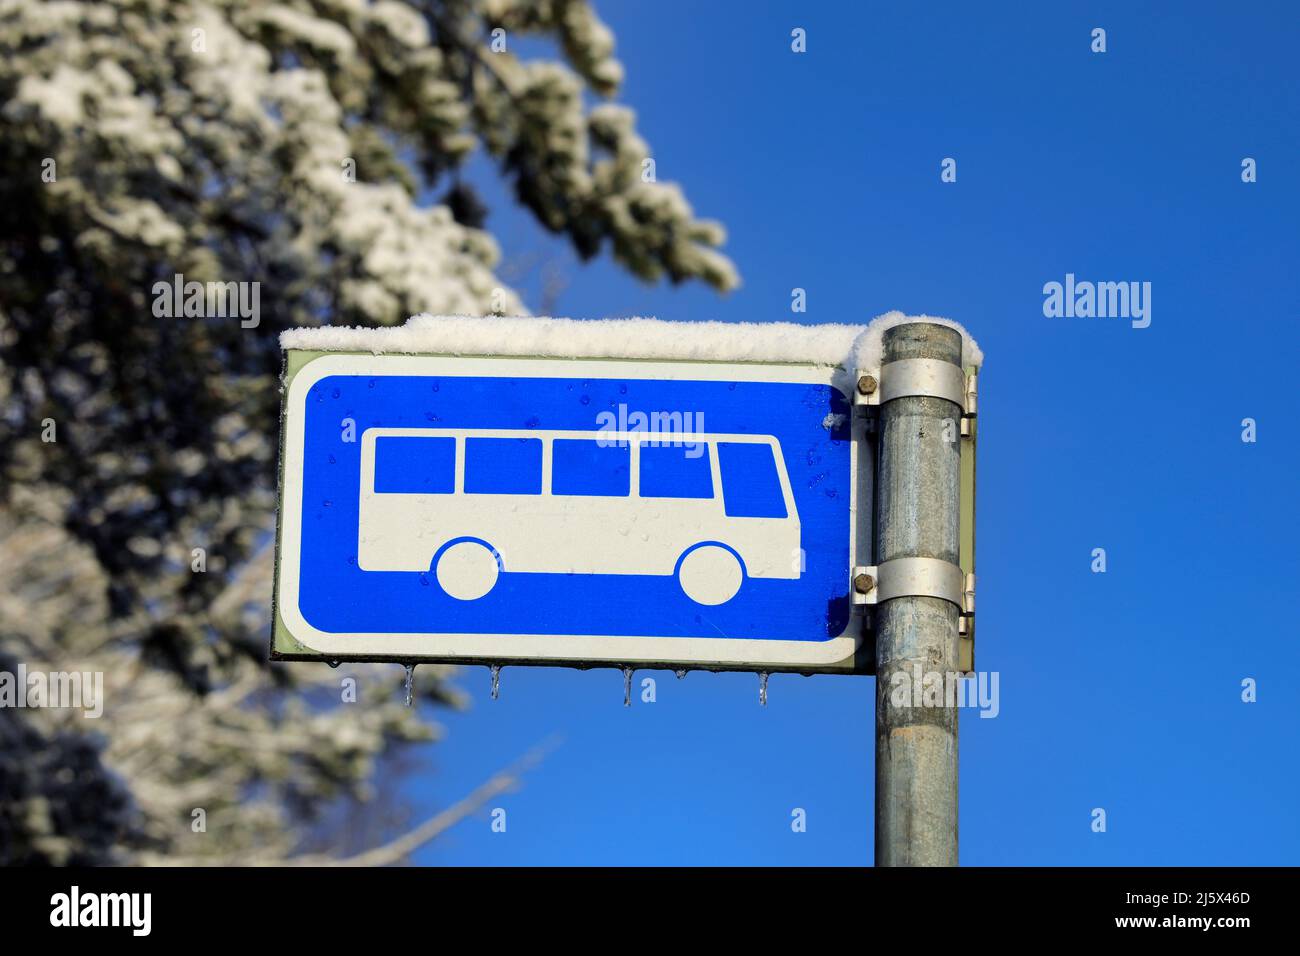 Panneau d'arrêt de bus à proximité le jour ensoleillé de l'hiver avec de la neige, de petites glaces, un arbre enneigé et un ciel bleu. Banque D'Images